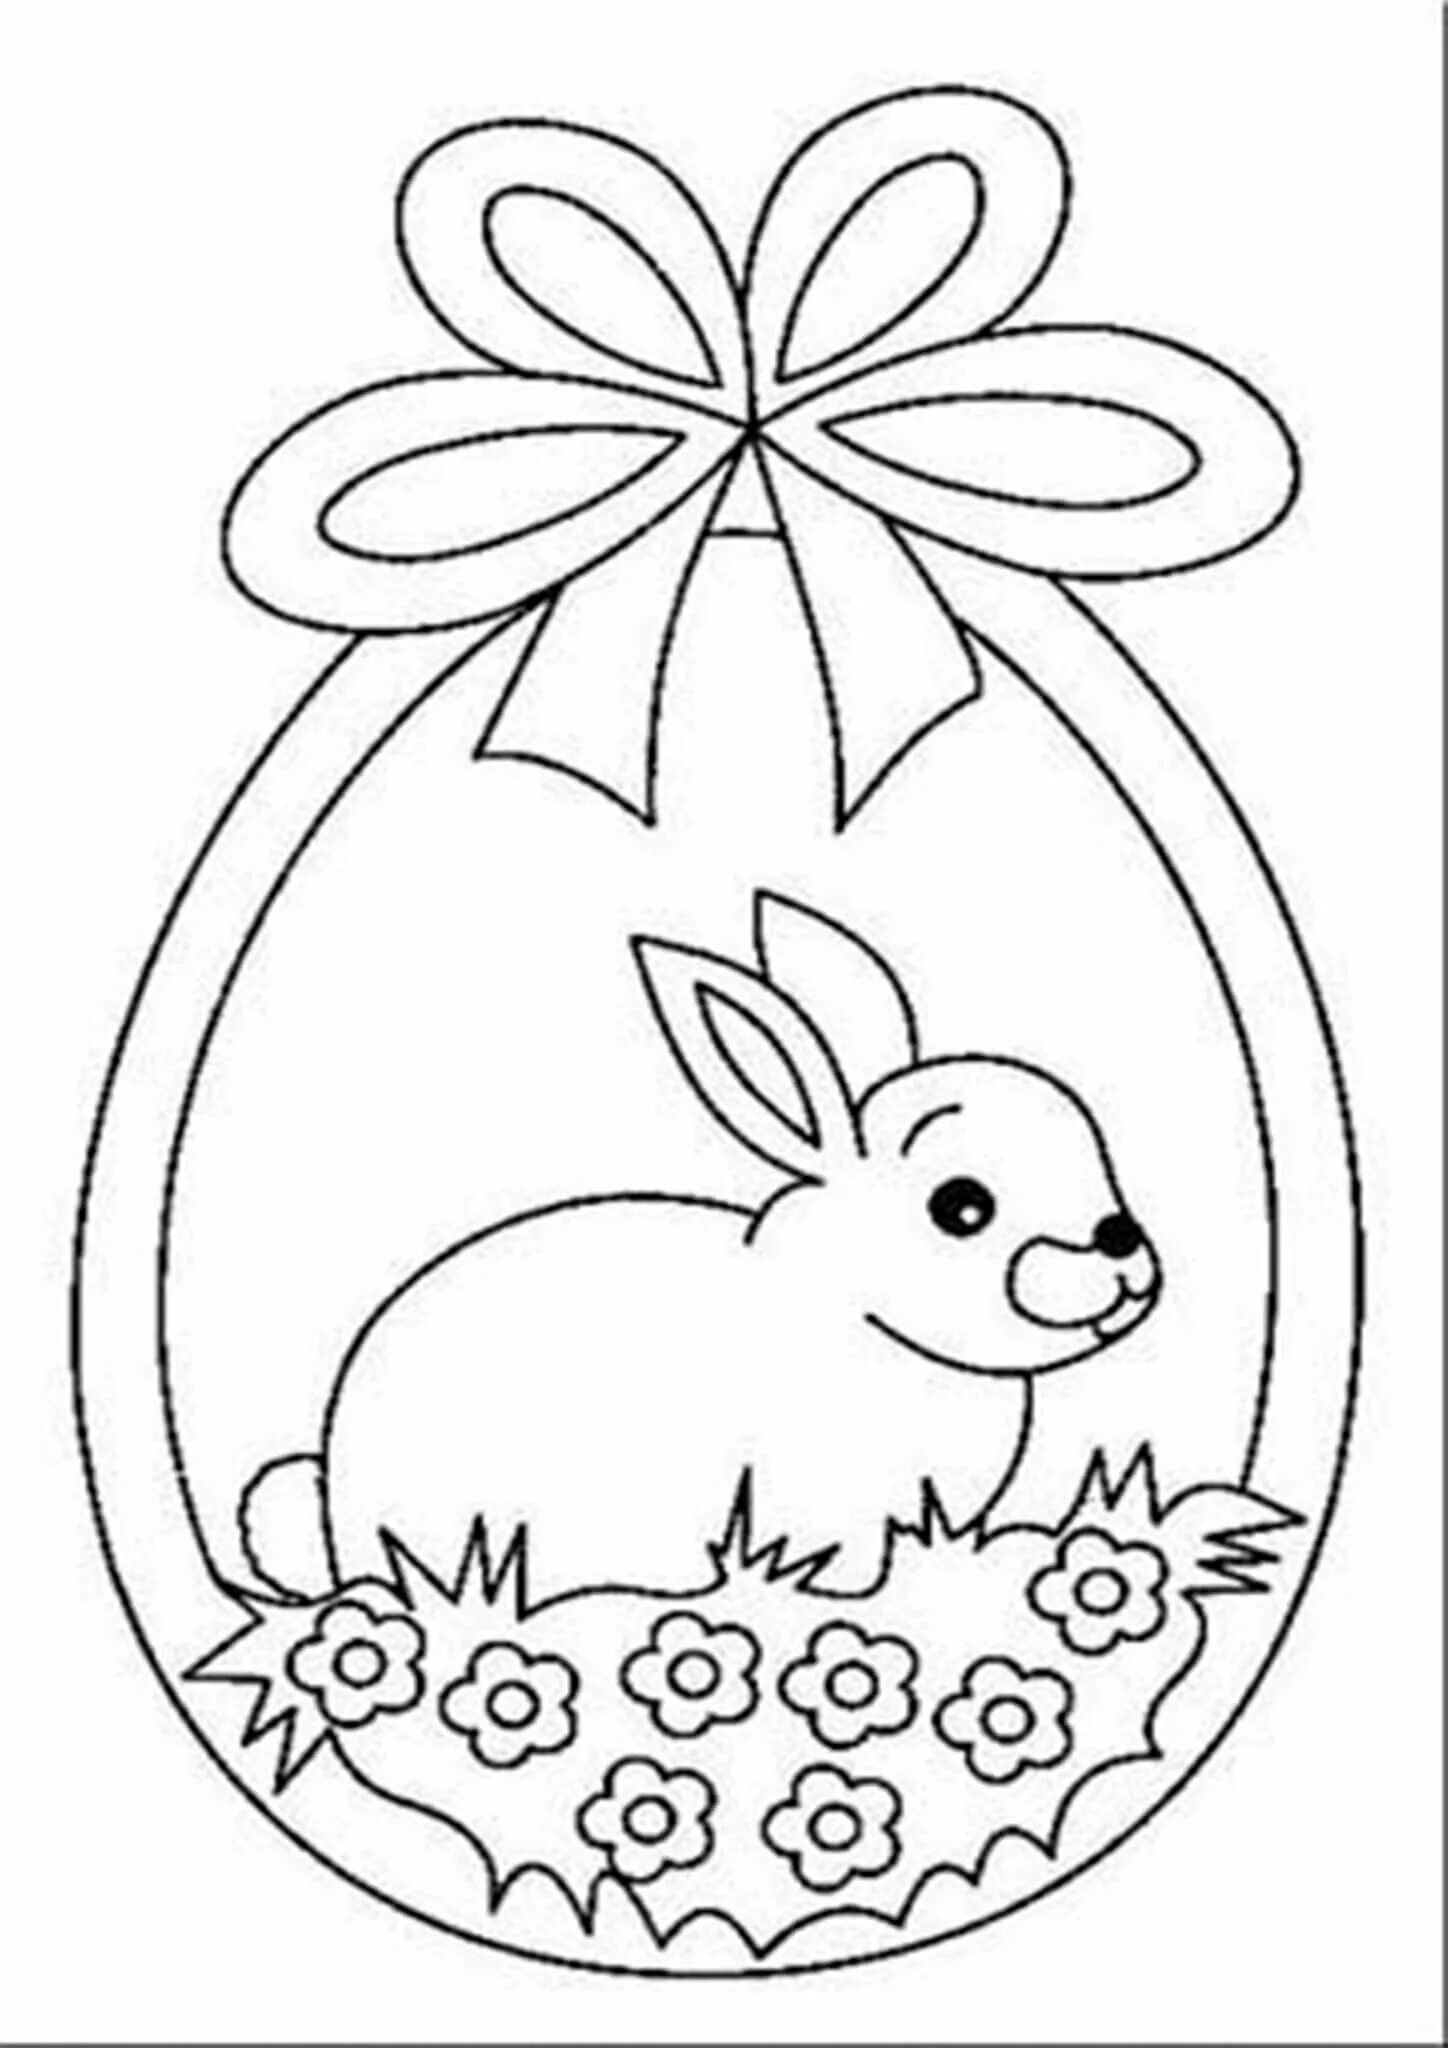 Шаблон пасхального зайца. Раскраска Пасха. Раскраски пасхальные для детей. Раскраска Пасха для детей. Трафареты к Пасхе для детей.